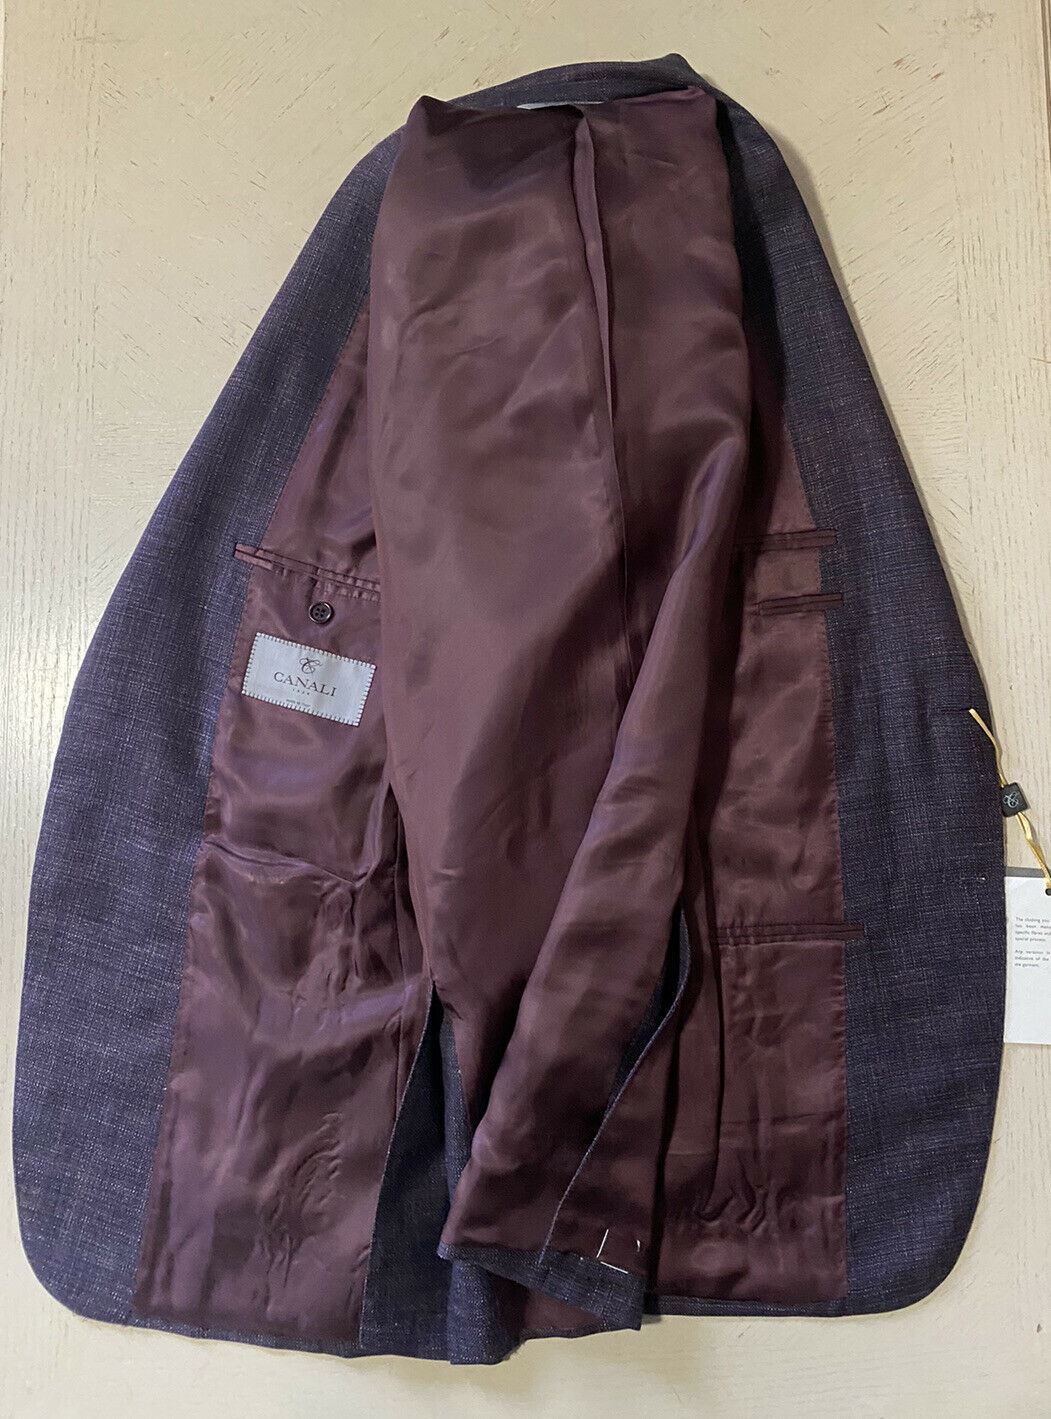 СЗТ $1695 Canali Мужская куртка Блейзер Фиолетовый Мульти 42R США (52R ЕС) Италия